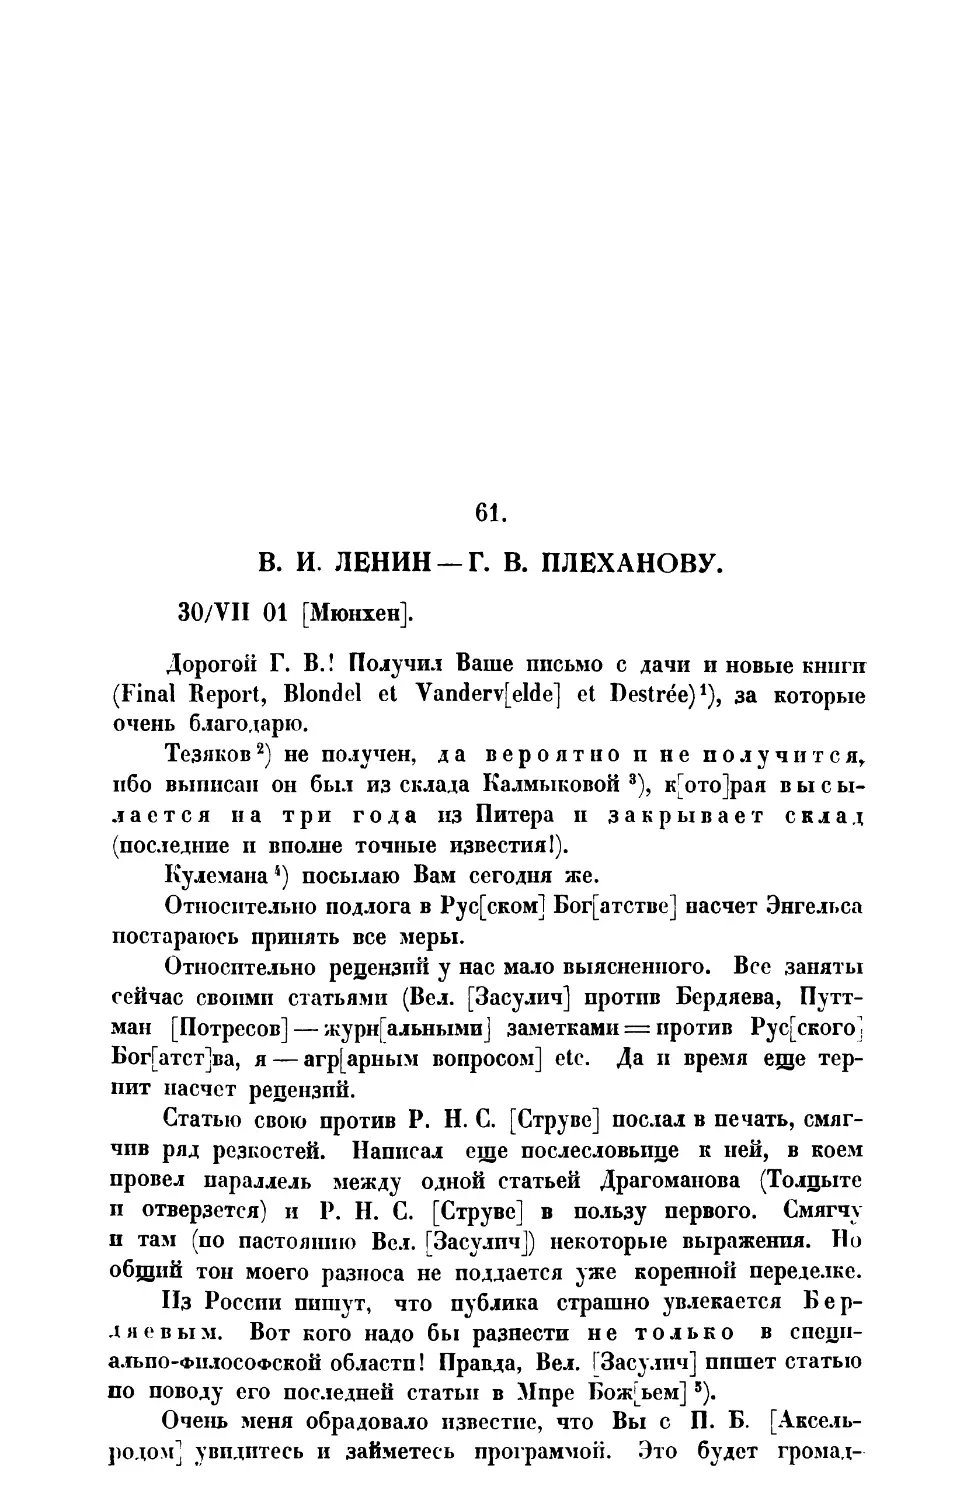 61. В. И. Ленин. — Письмо Г. В. Плеханову от 30 VII 1901 г.